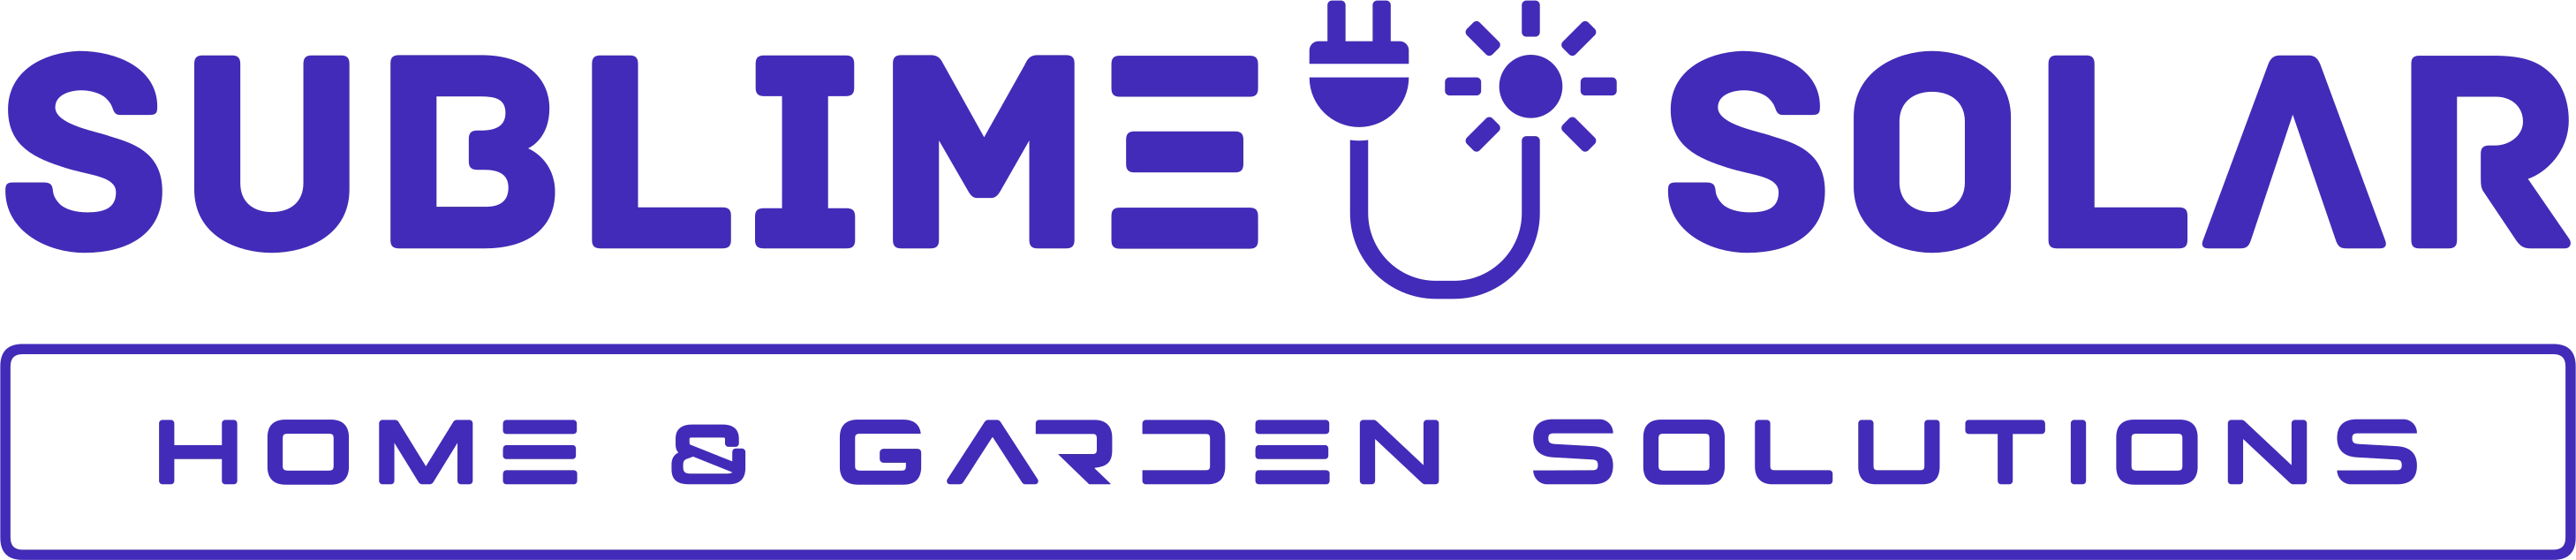 Sublime Solar Home & Garden Solutions Logo